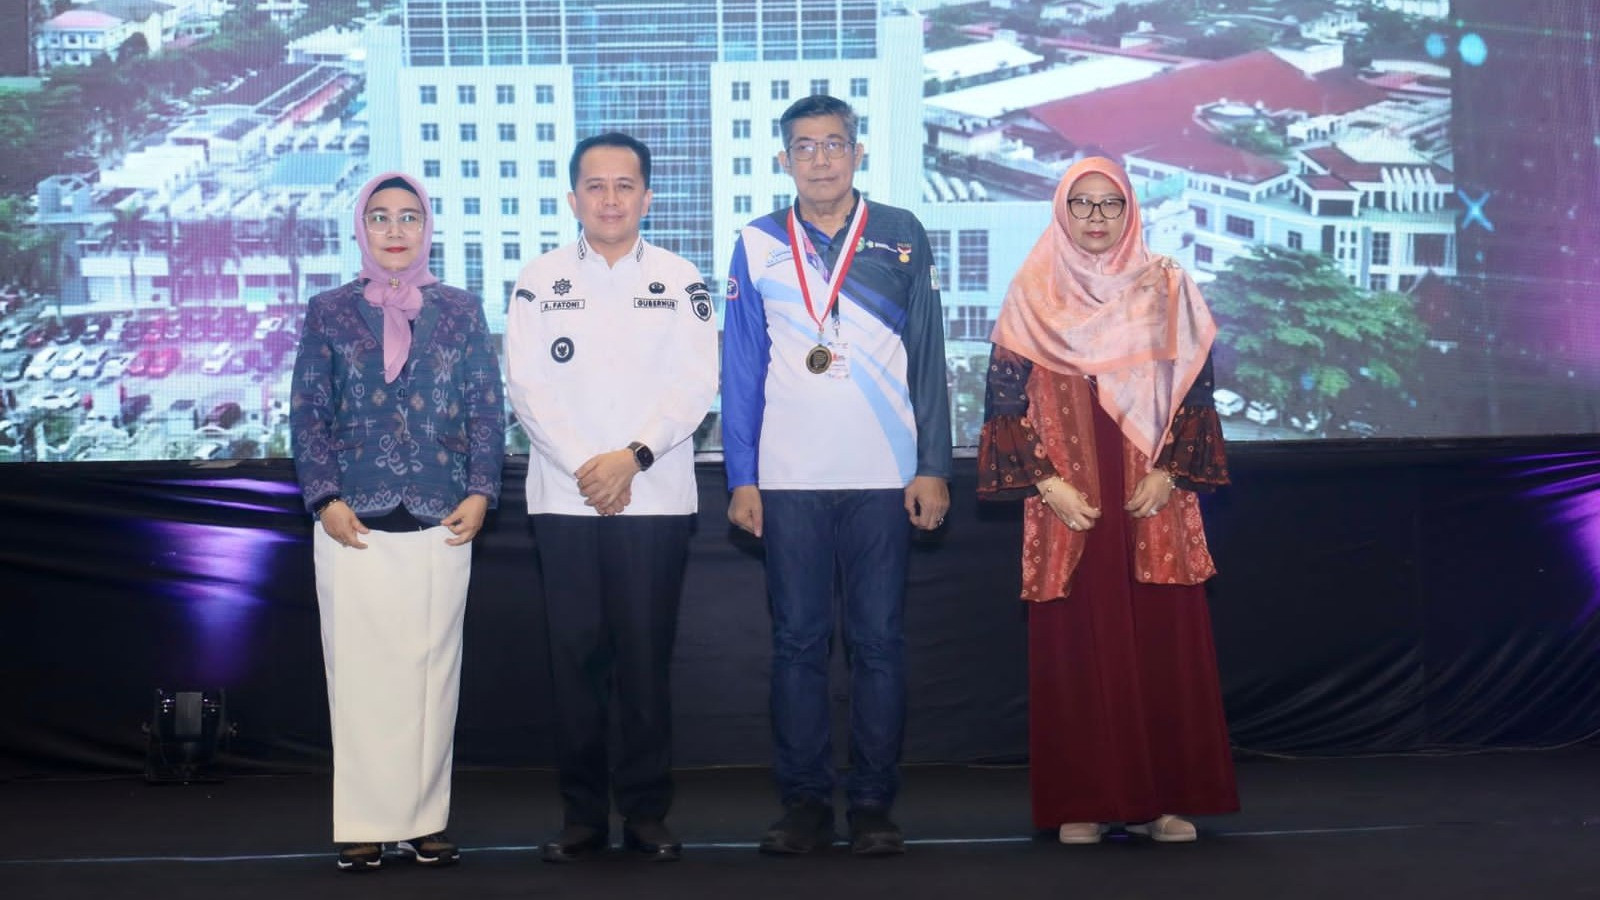 Kompetisi Code Blue yang diselenggarakan Perdatin Indonesia Cabang Sumsel berhasil mencetak rekor Museum Rekor Dunia Indonesia (Muri) sebagai penyelenggara dengan peserta terbanyak.